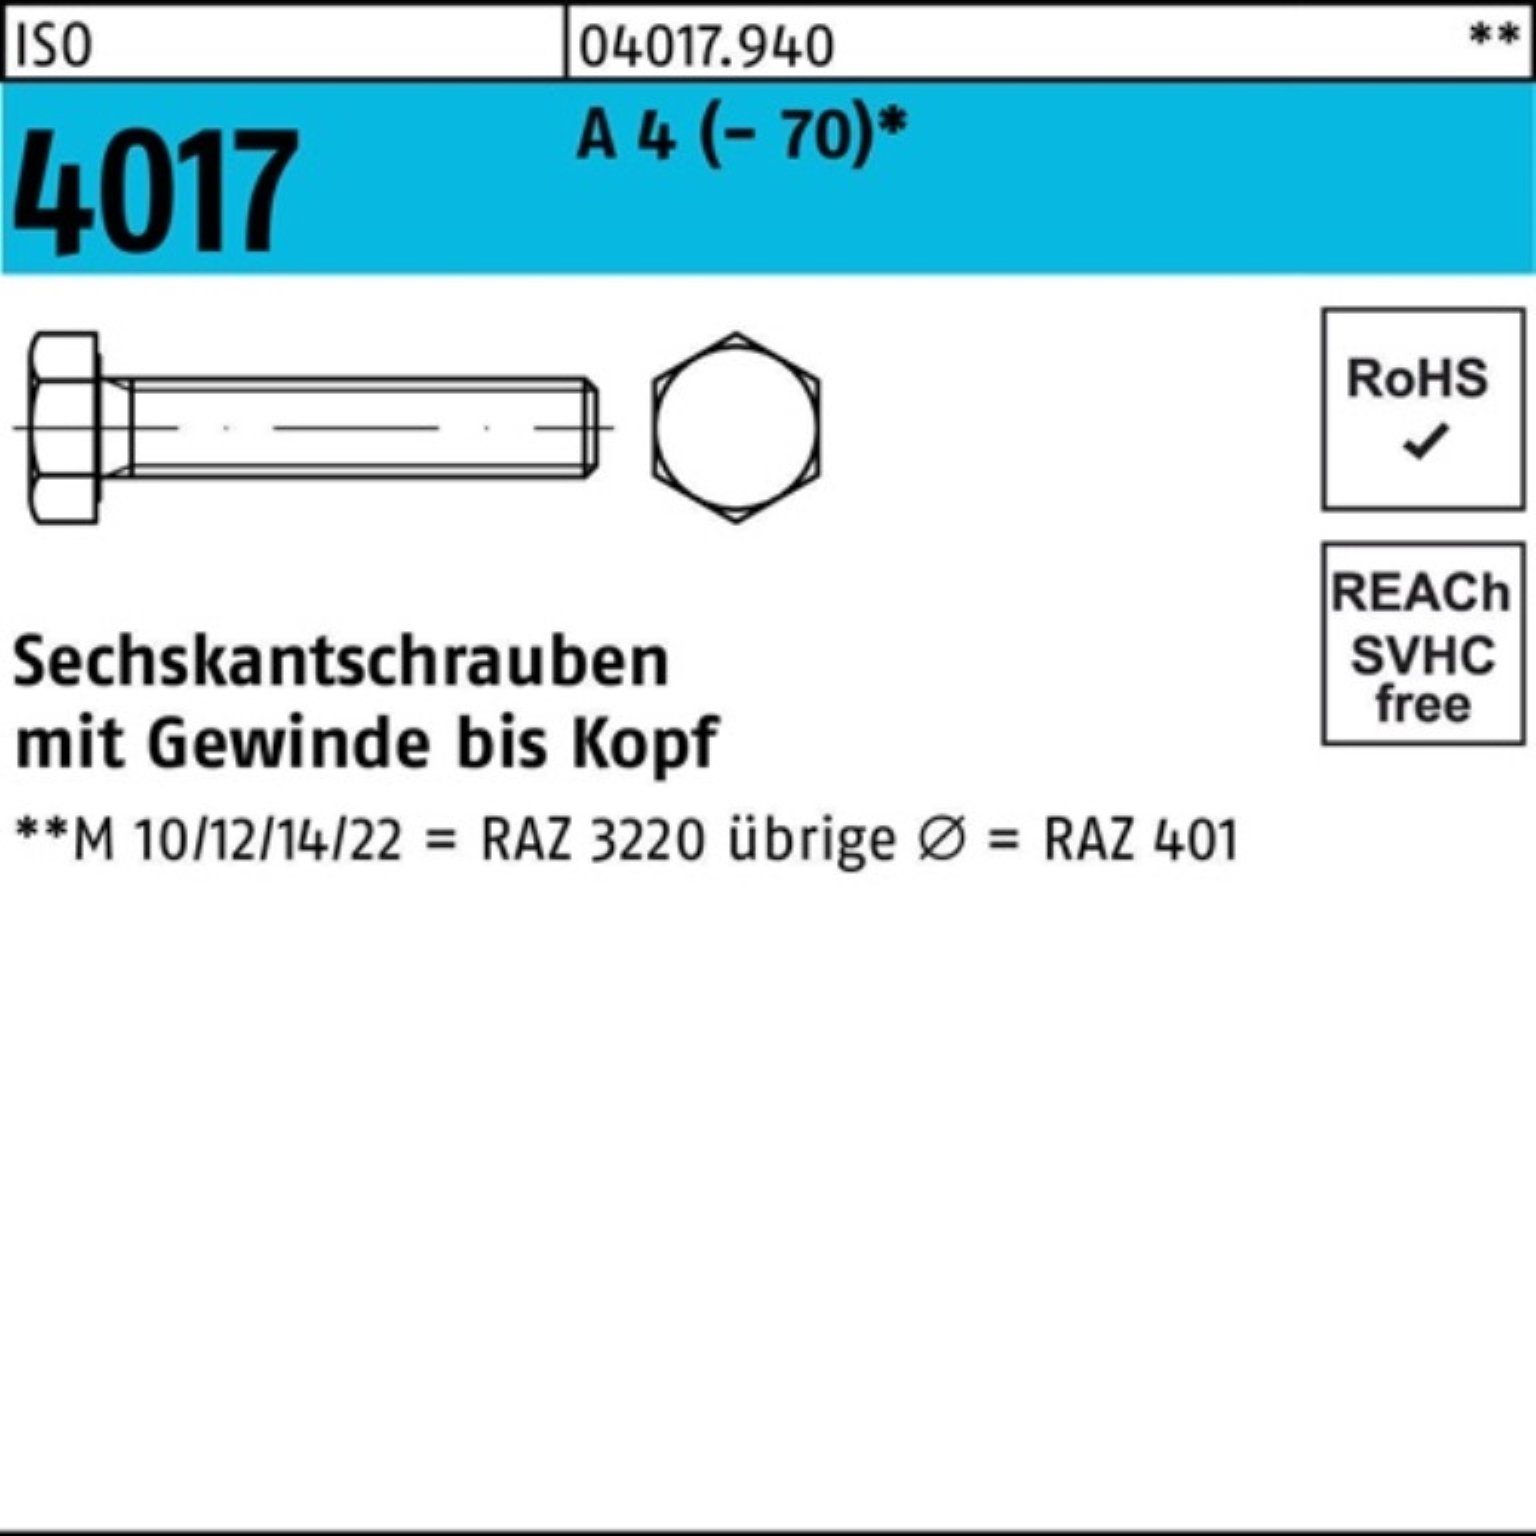 Bufab Sechskantschraube 4 Stück ISO Sechskantschraube VG Pack 4017 200er 22 200 M8x (70) A